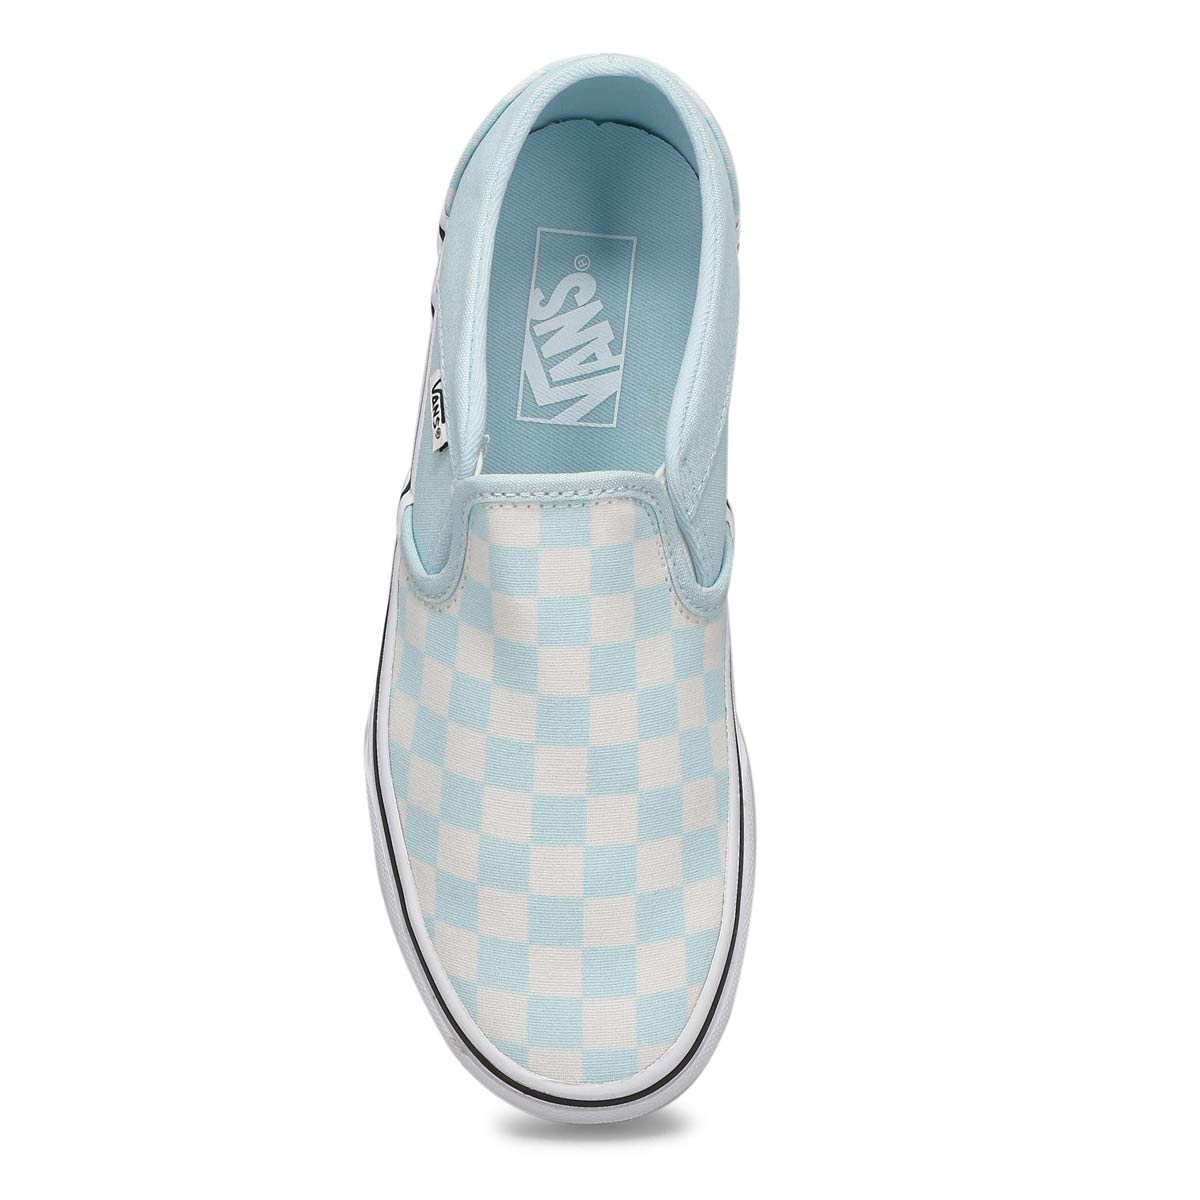 Women's Asher Sneaker - Checkered Blue/ White